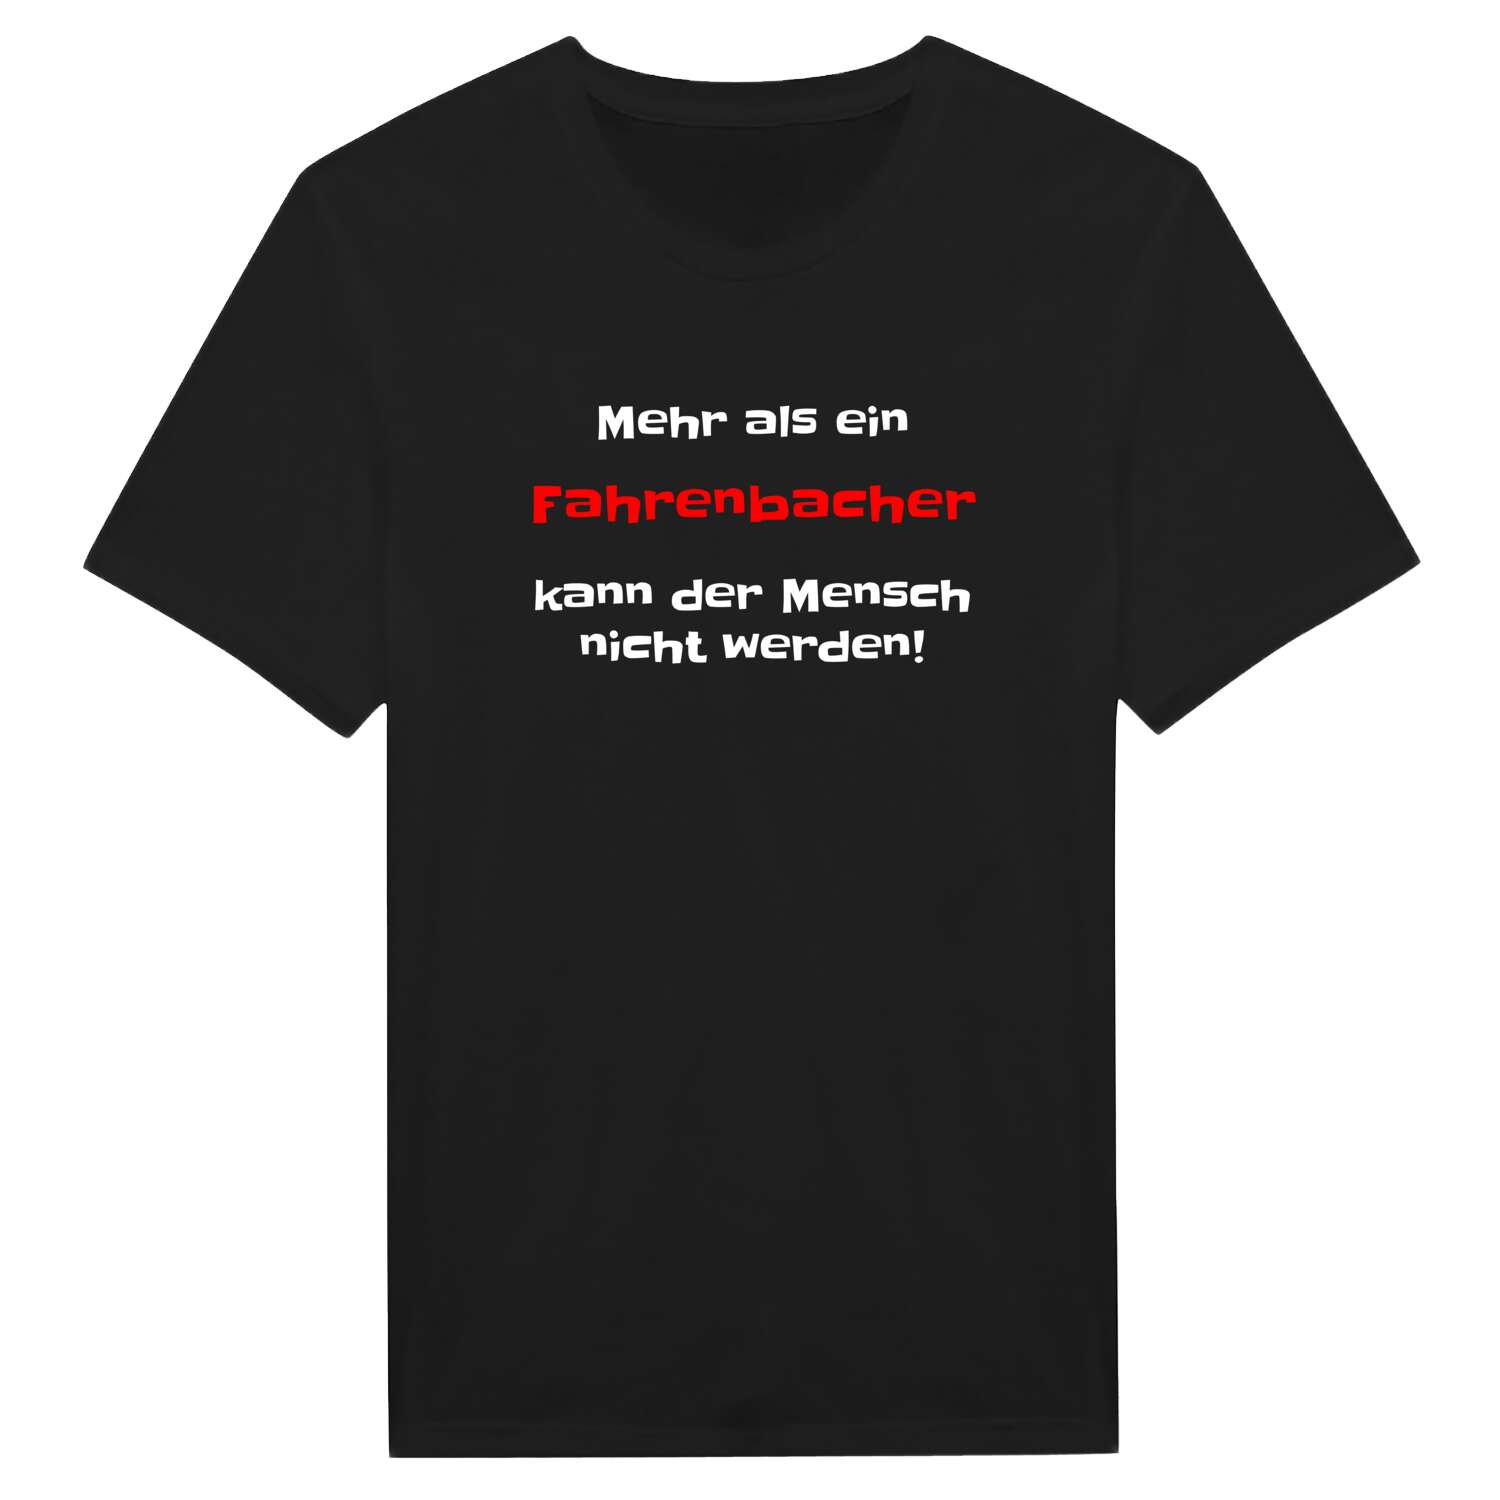 Fahrenbach T-Shirt »Mehr als ein«